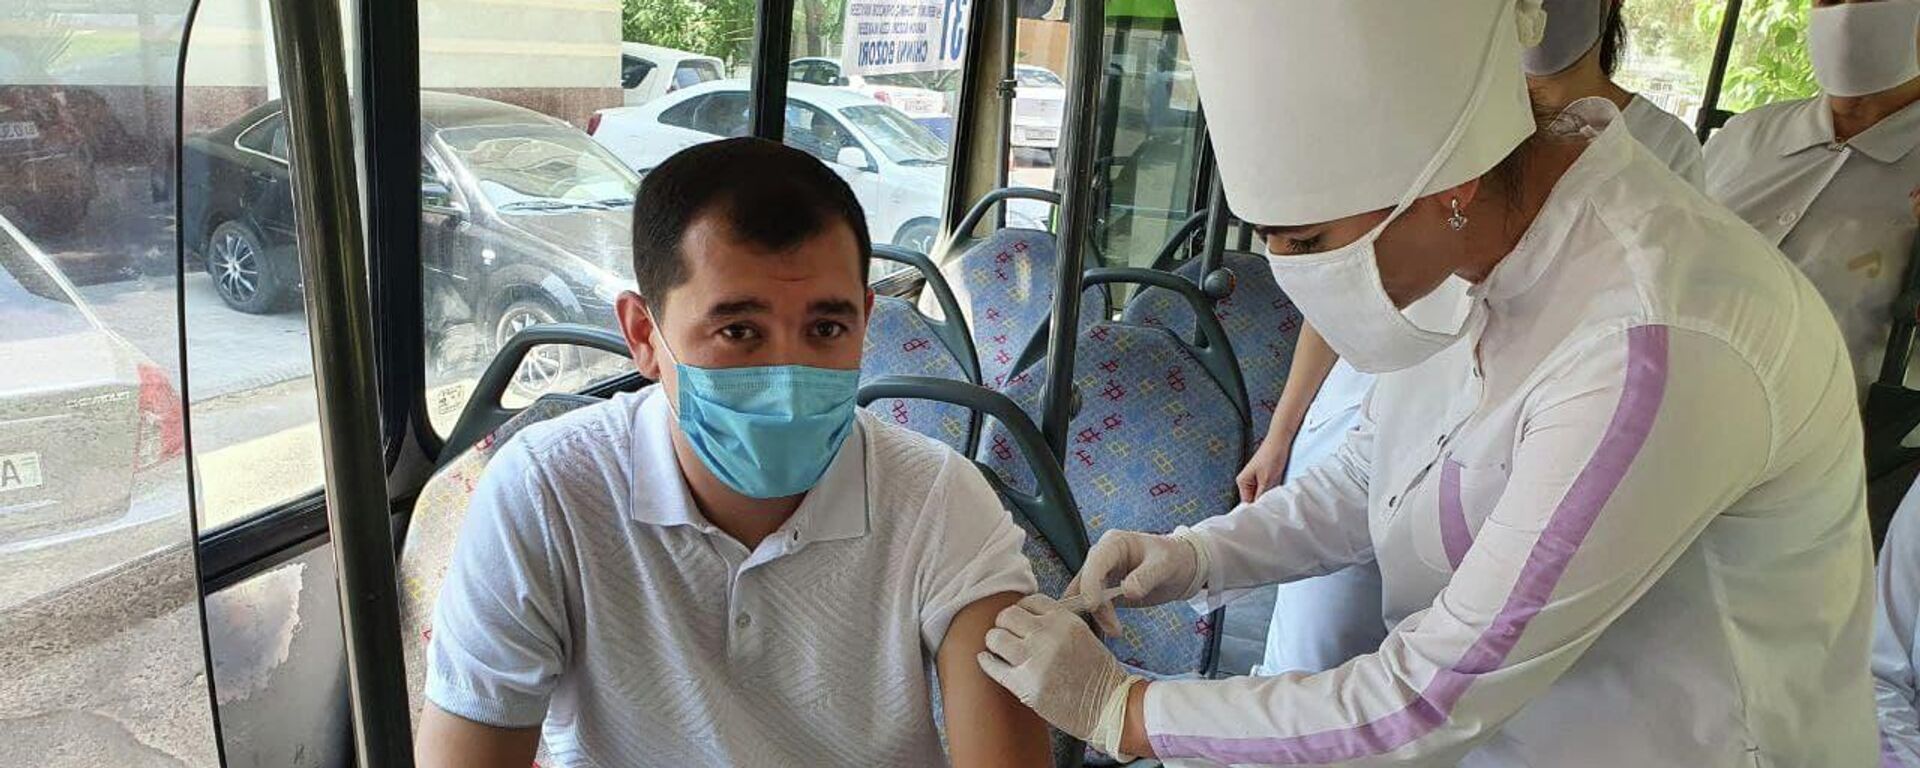 В Ташкенте начали вакцинацию в местах массового скопления людей - Sputnik Ўзбекистон, 1920, 18.07.2021